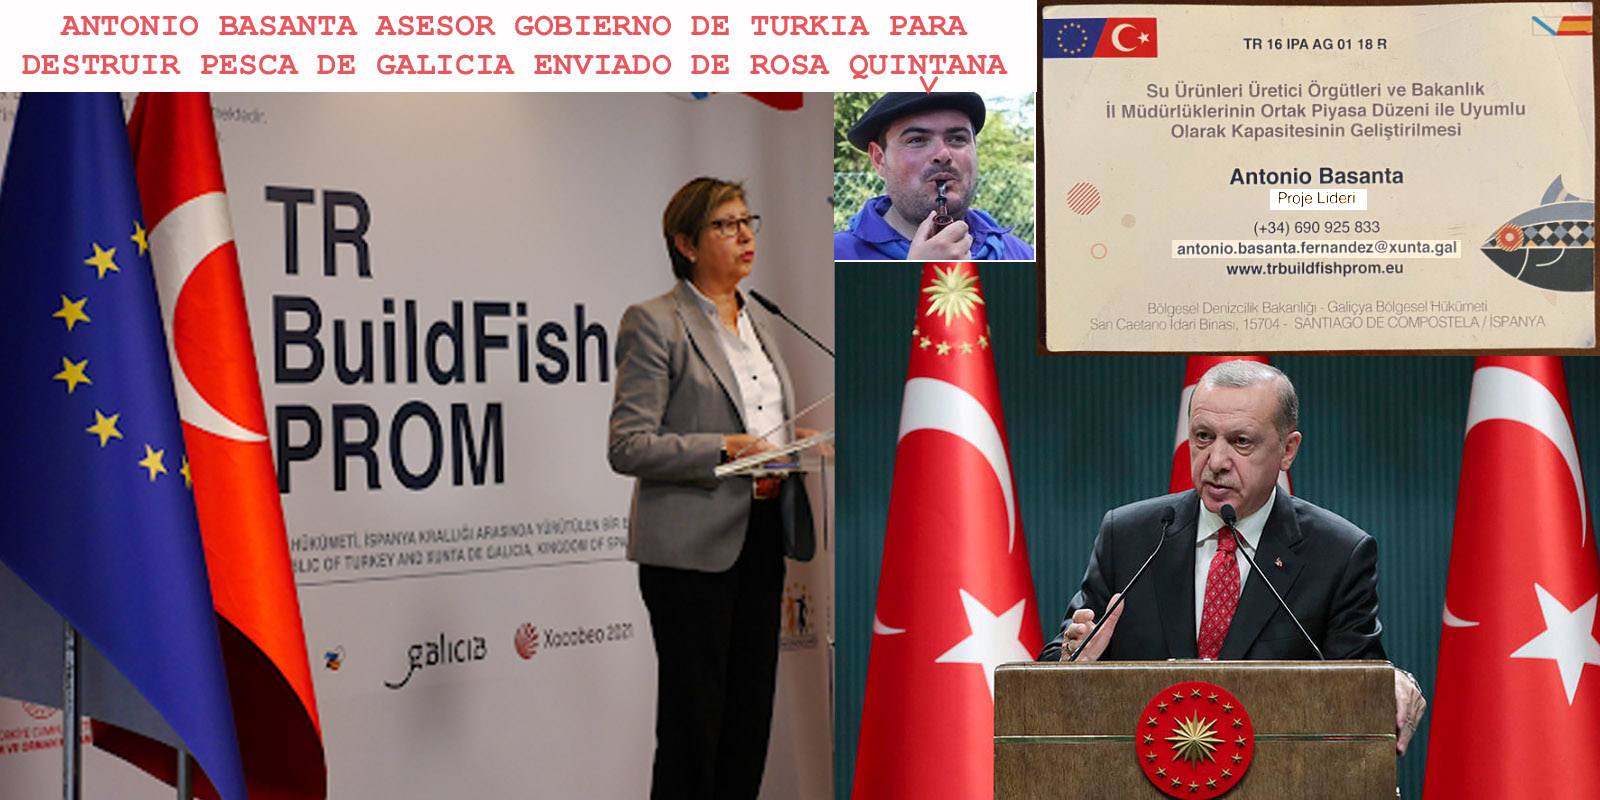 Rosa Quintana y Antonio Basanta despliegan en Turkia bajo sus cargos  políticos un modus operandi de presunta malversación de fondos europeos que  han volado y para destruir de la pesca gallega. -